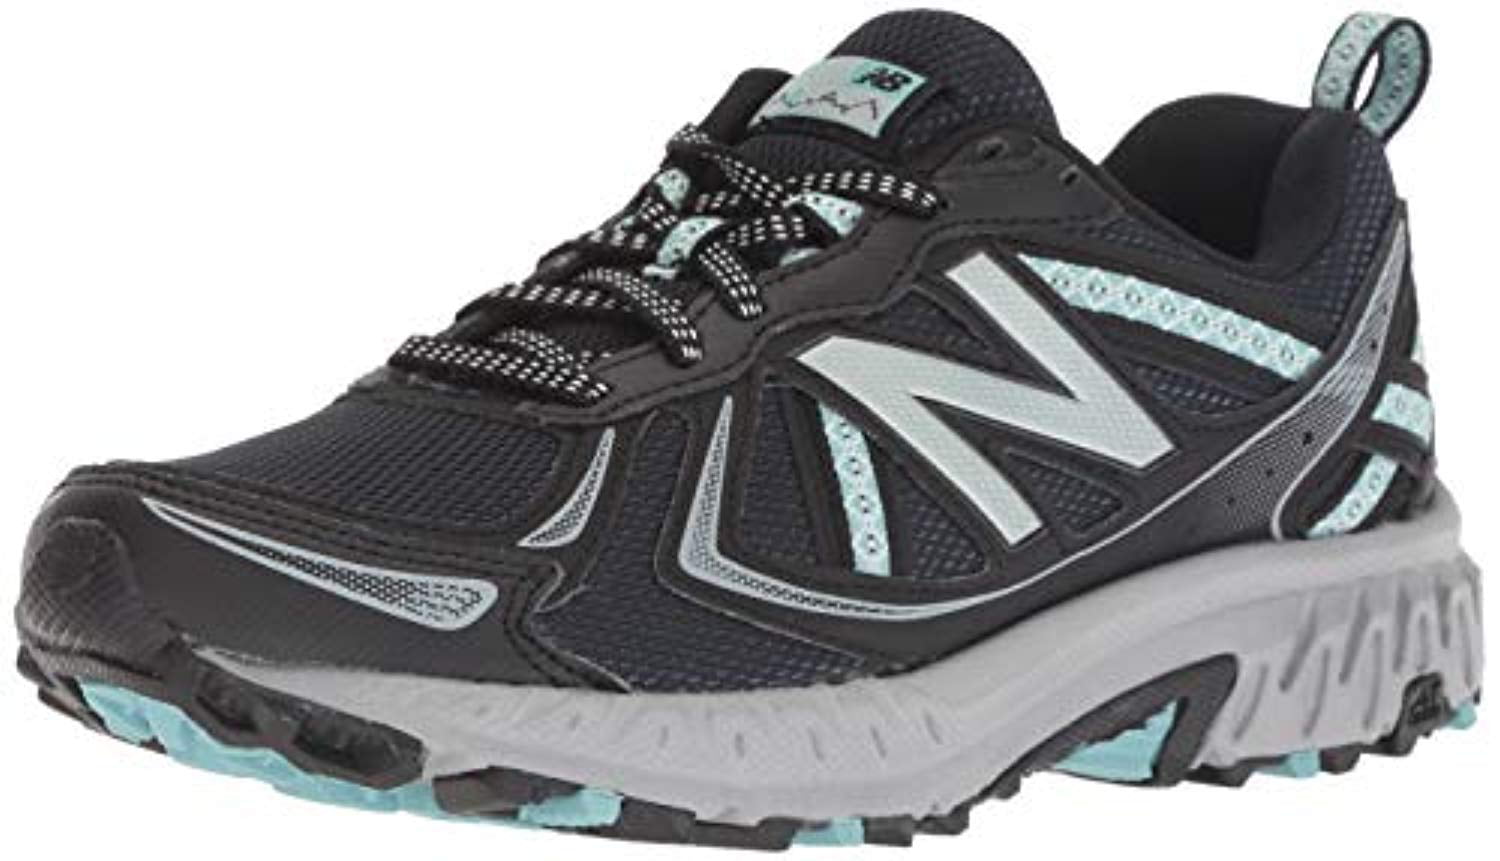 410v5 trail running shoe